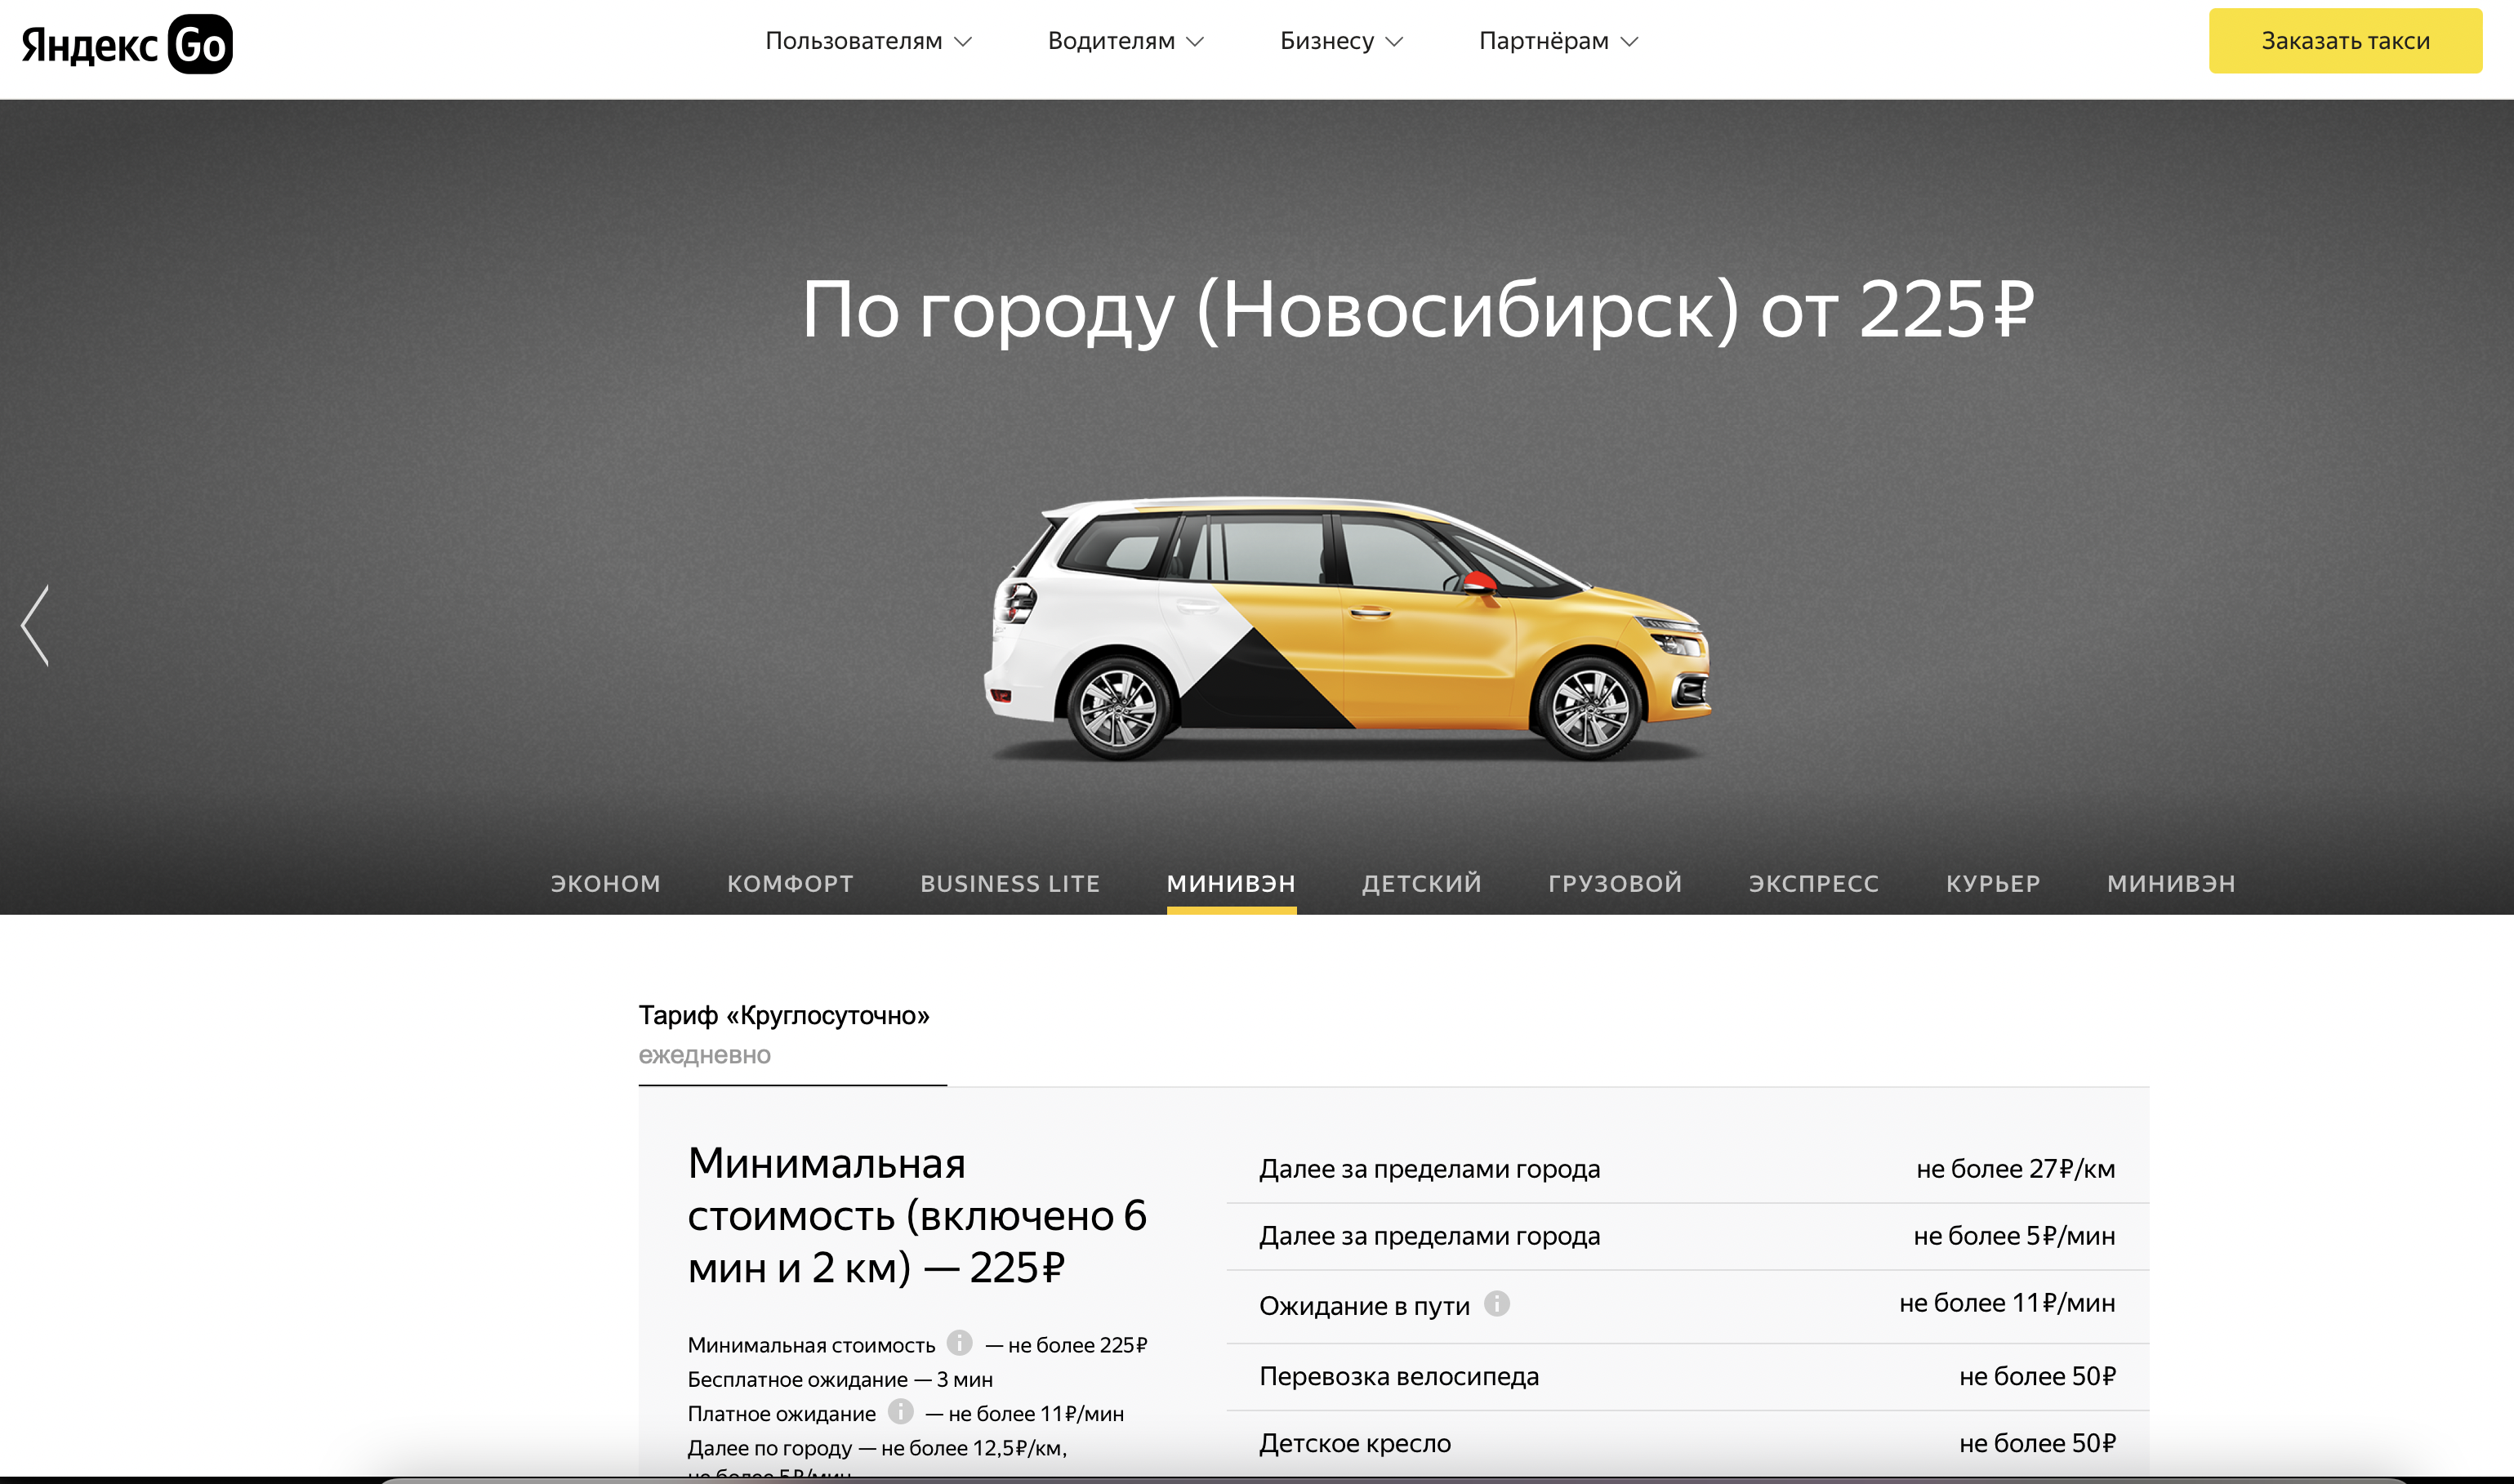 Такси новосибирск заказать по телефону номер. Такси Новосибирск заказать.